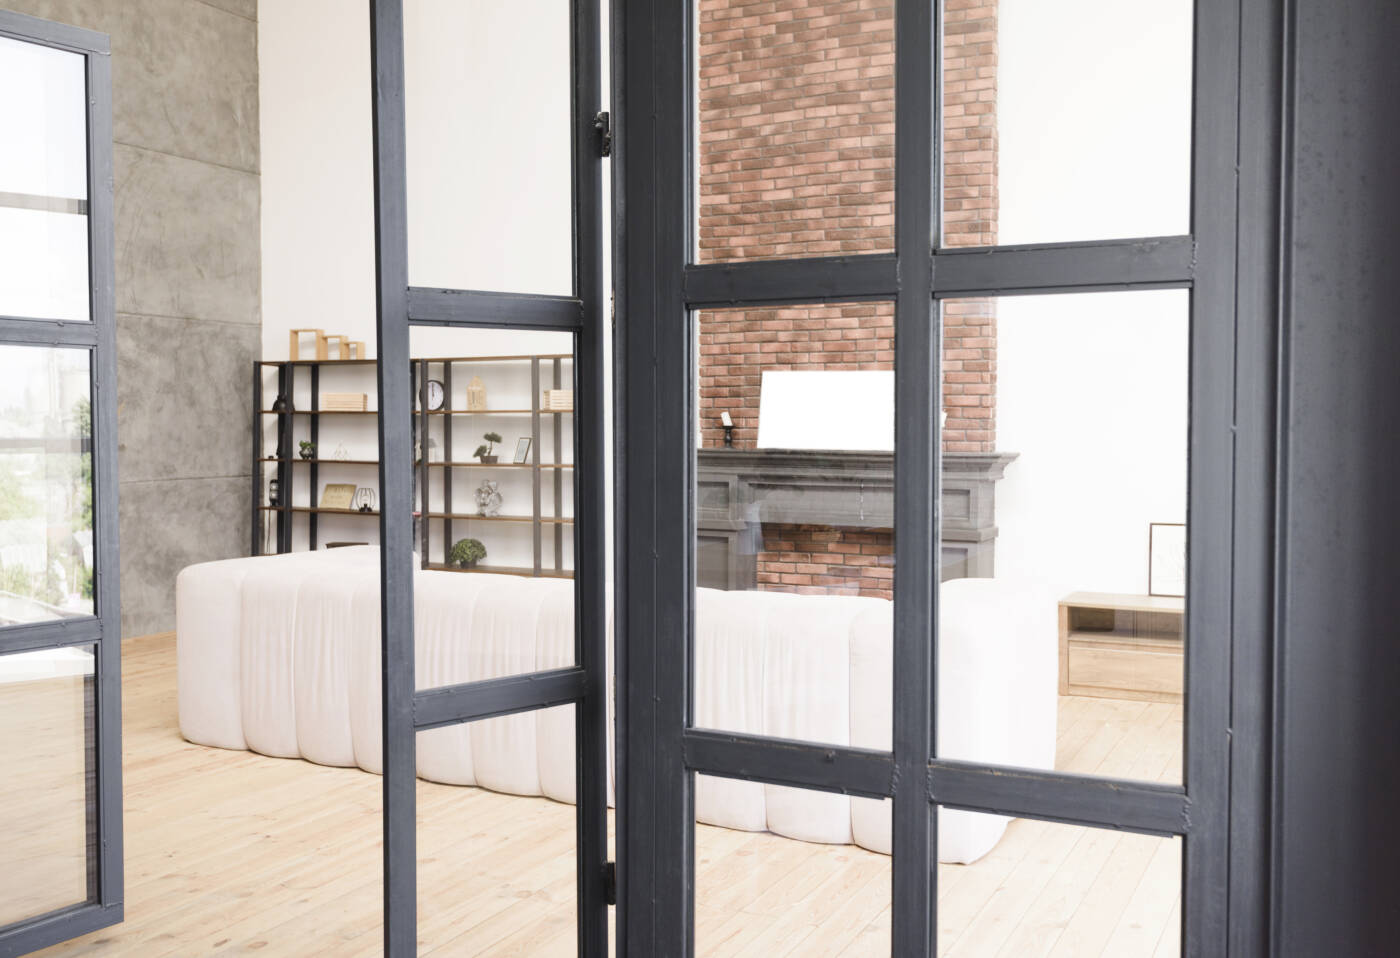 Une verrière d'intérieur en bois peint en noir qui sépare le salon de la salle à manger grâce à des portes de verrière.